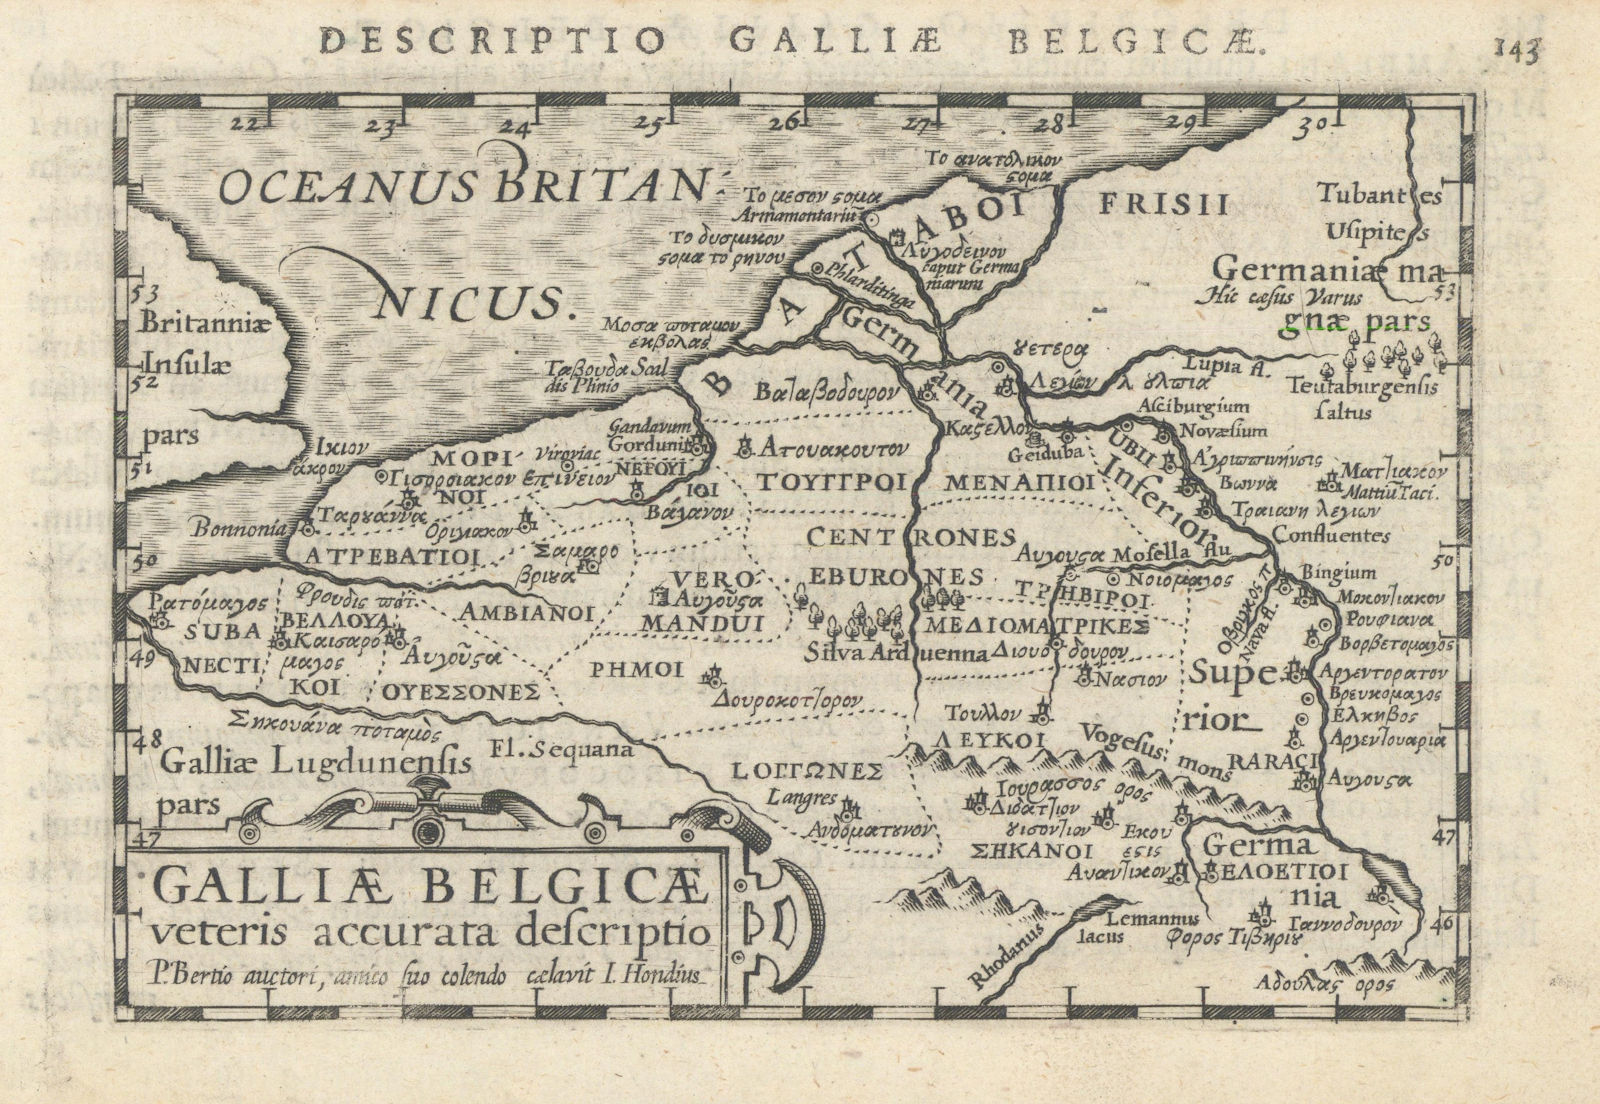 Galliae Belgicae veteris by Bertius / Langenes. Ancient Belgium 1603 old map